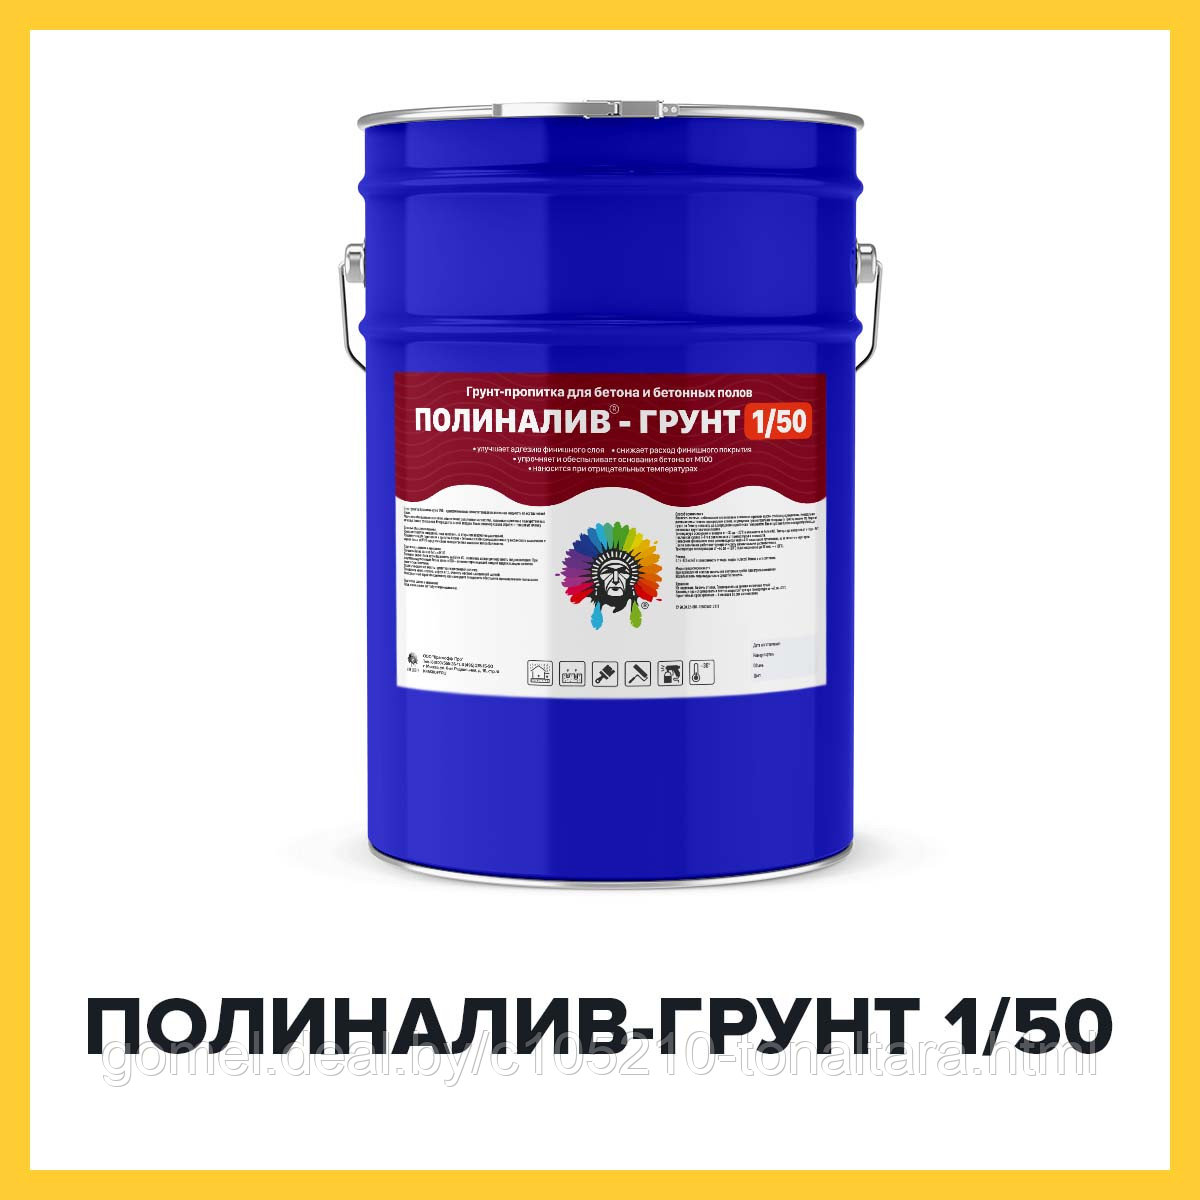 ПОЛИНАЛИВ-ГРУНТ 1/50 (Kraskoff Pro) – полиуретановая грунт-пропитка для наливных полов